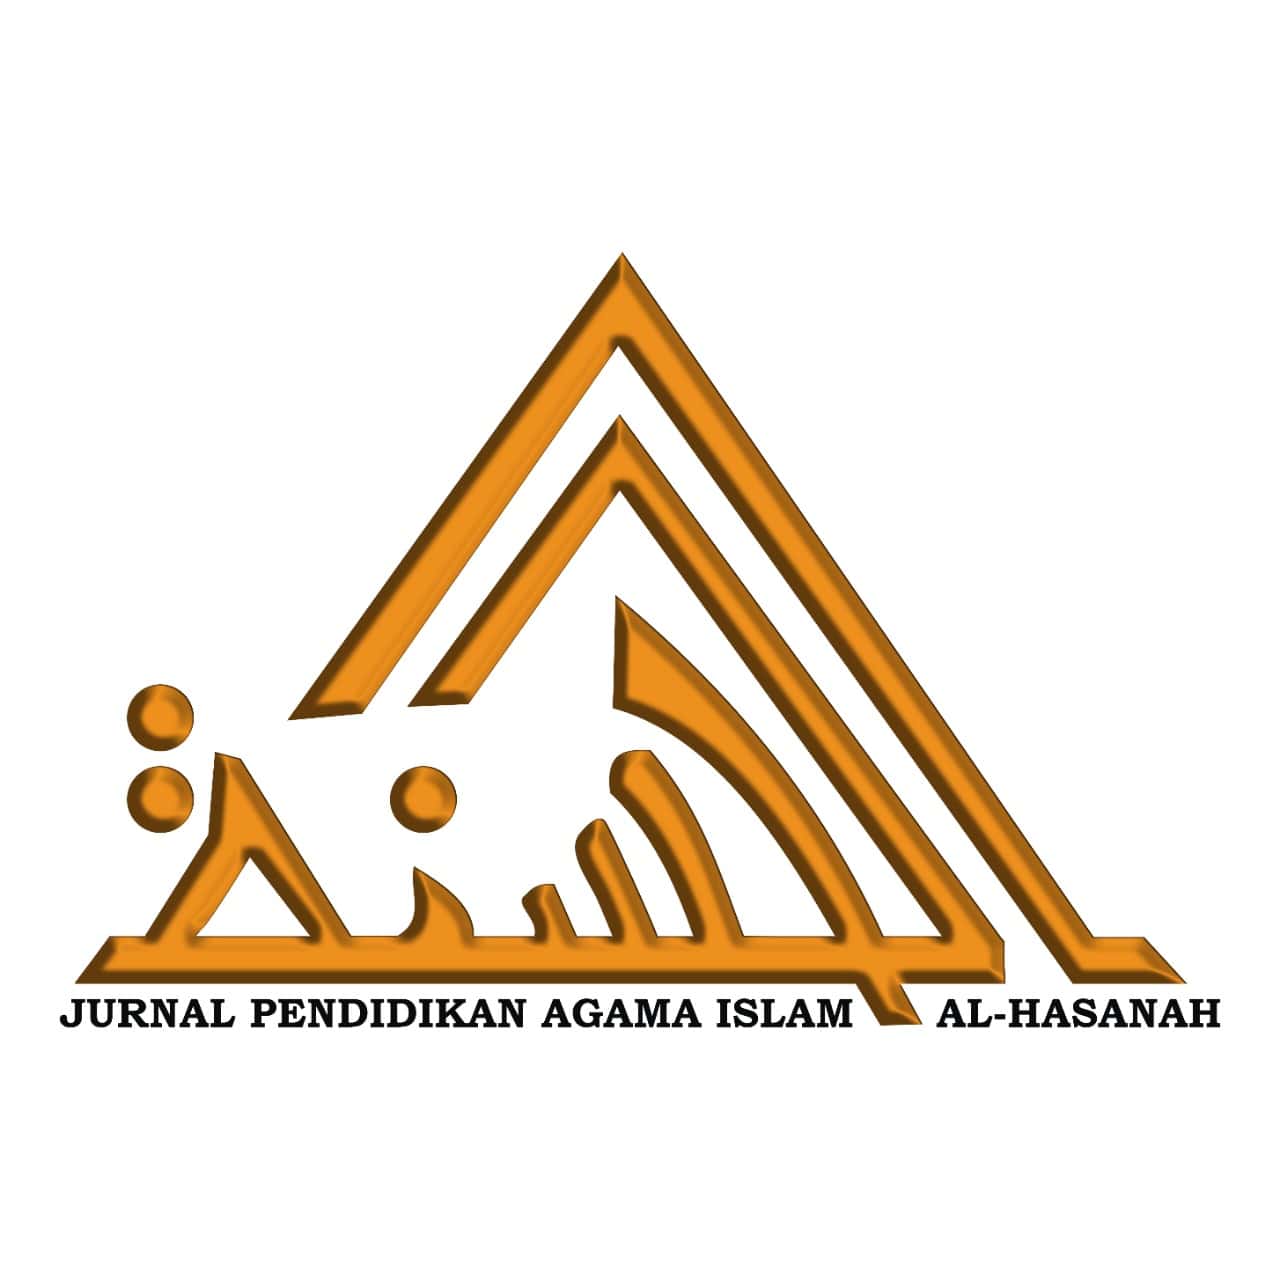 Jurnal Pendidikan Agama Islam al-Hasanah